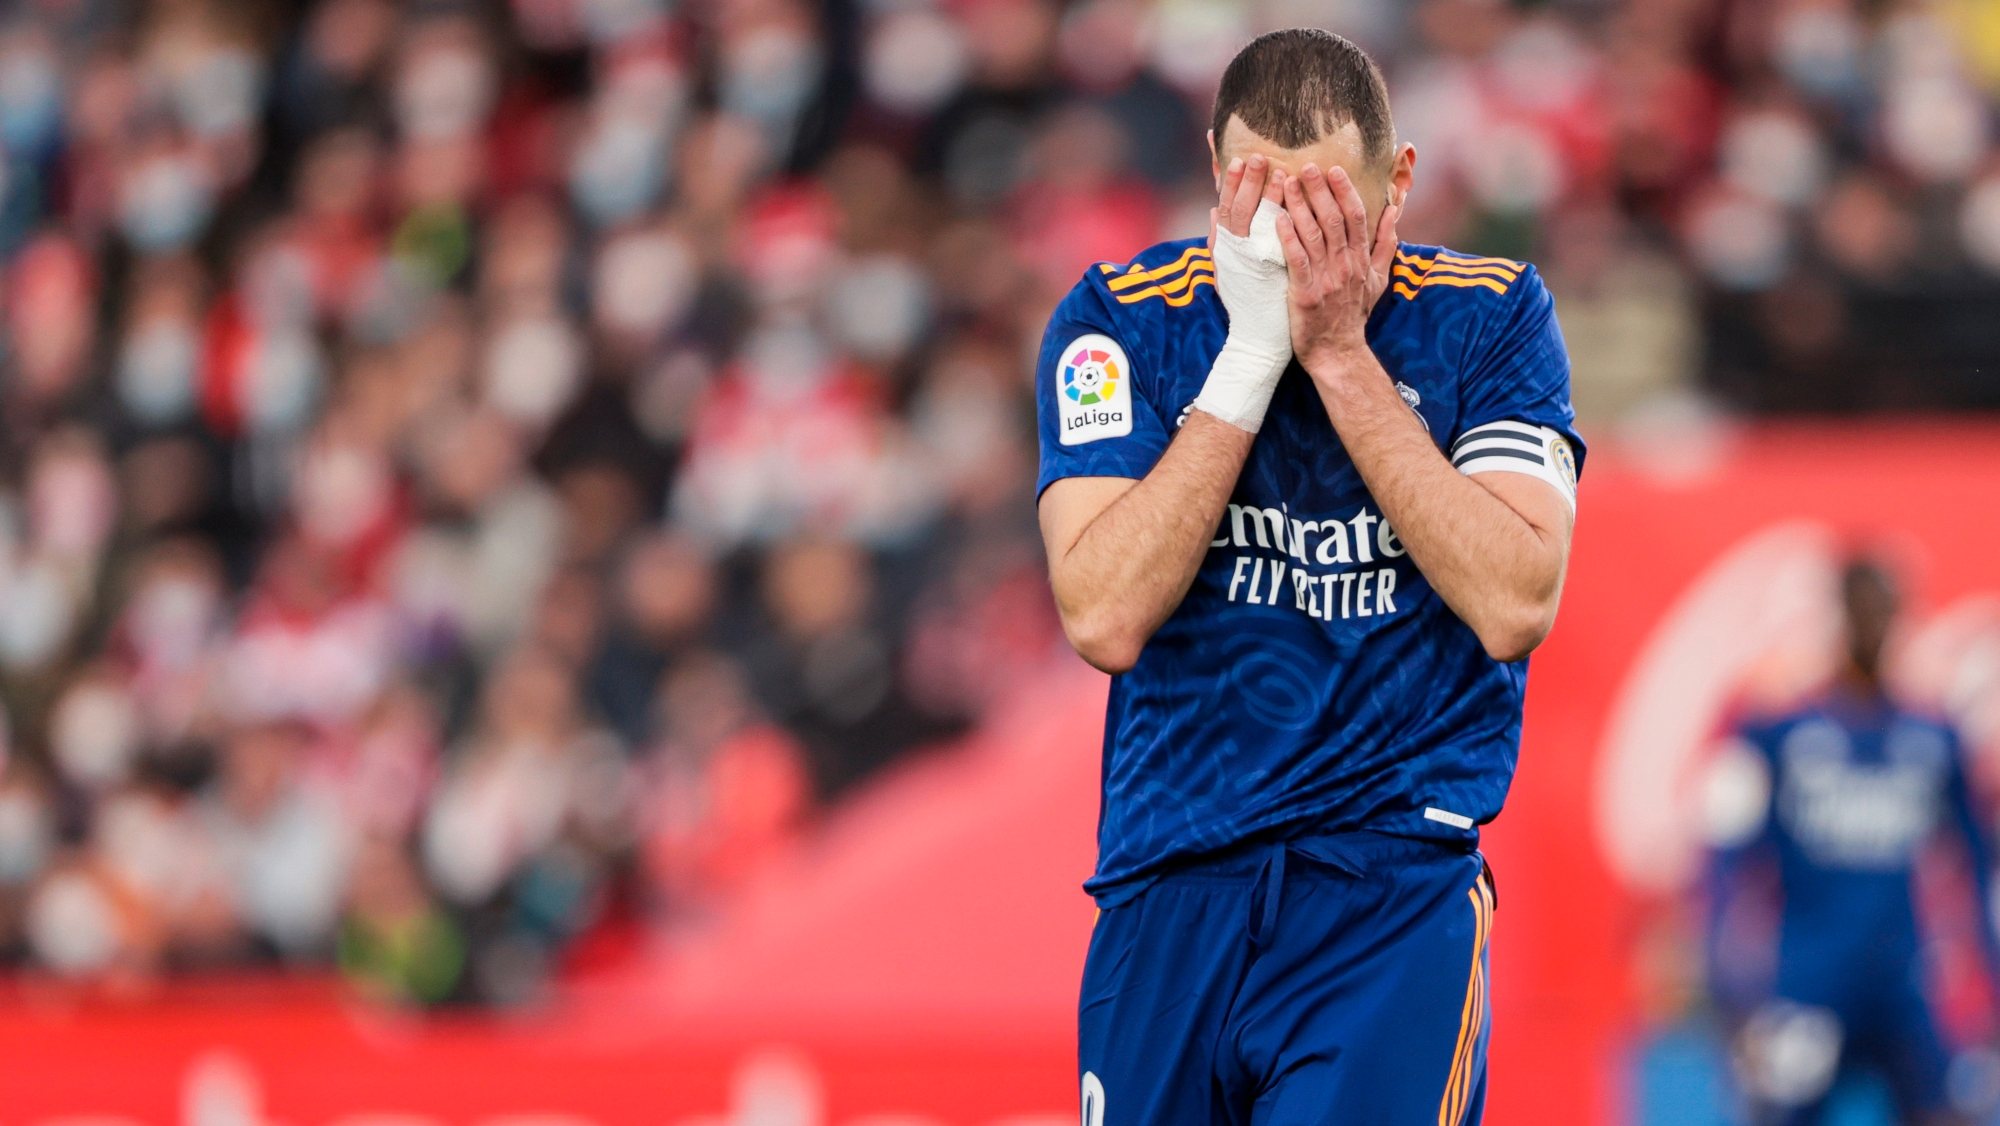 Karim Benzema ficou afastado até este ano da seleção depois do caso que envolveu o antigo companheiro Valbuena